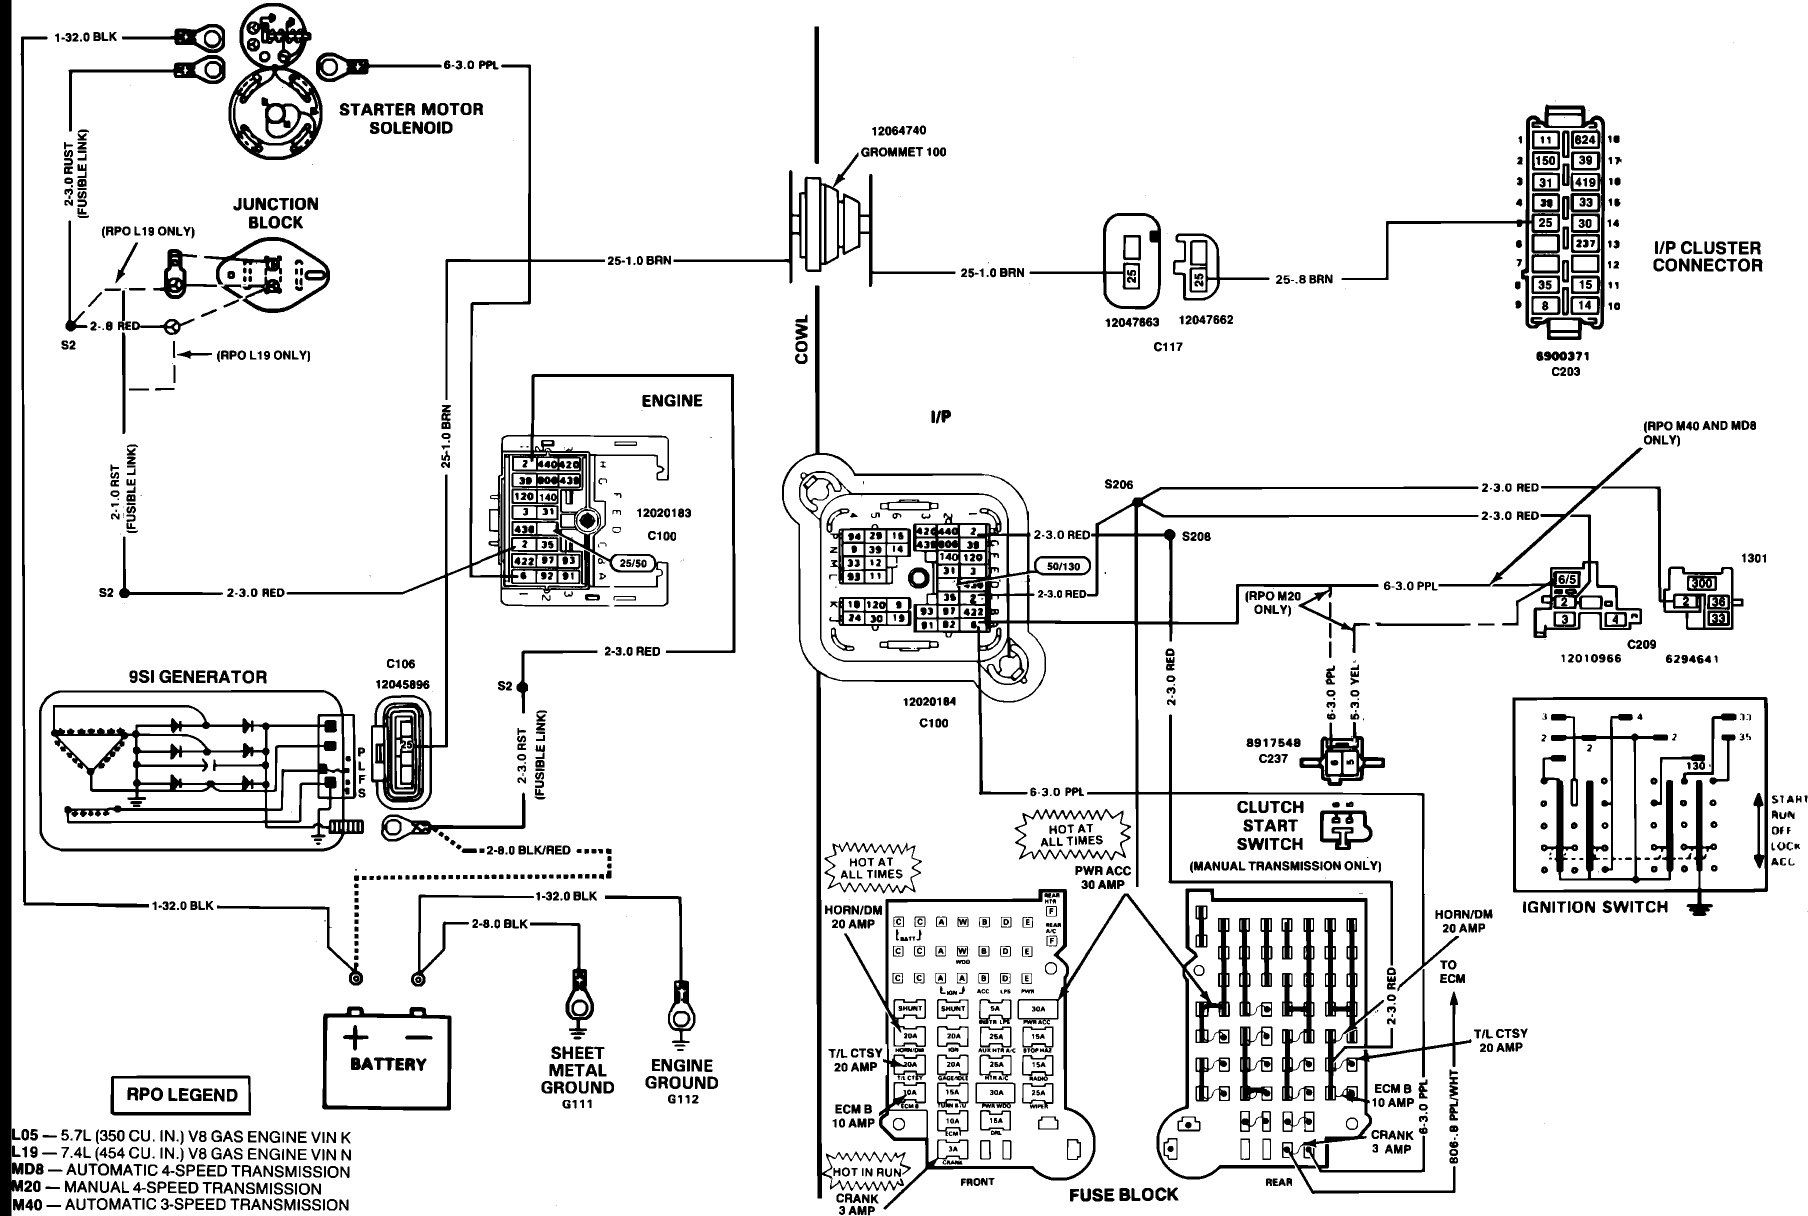 1987 Gmc Air Conditioning Wiring Diagram - Wiring Diagram Schema